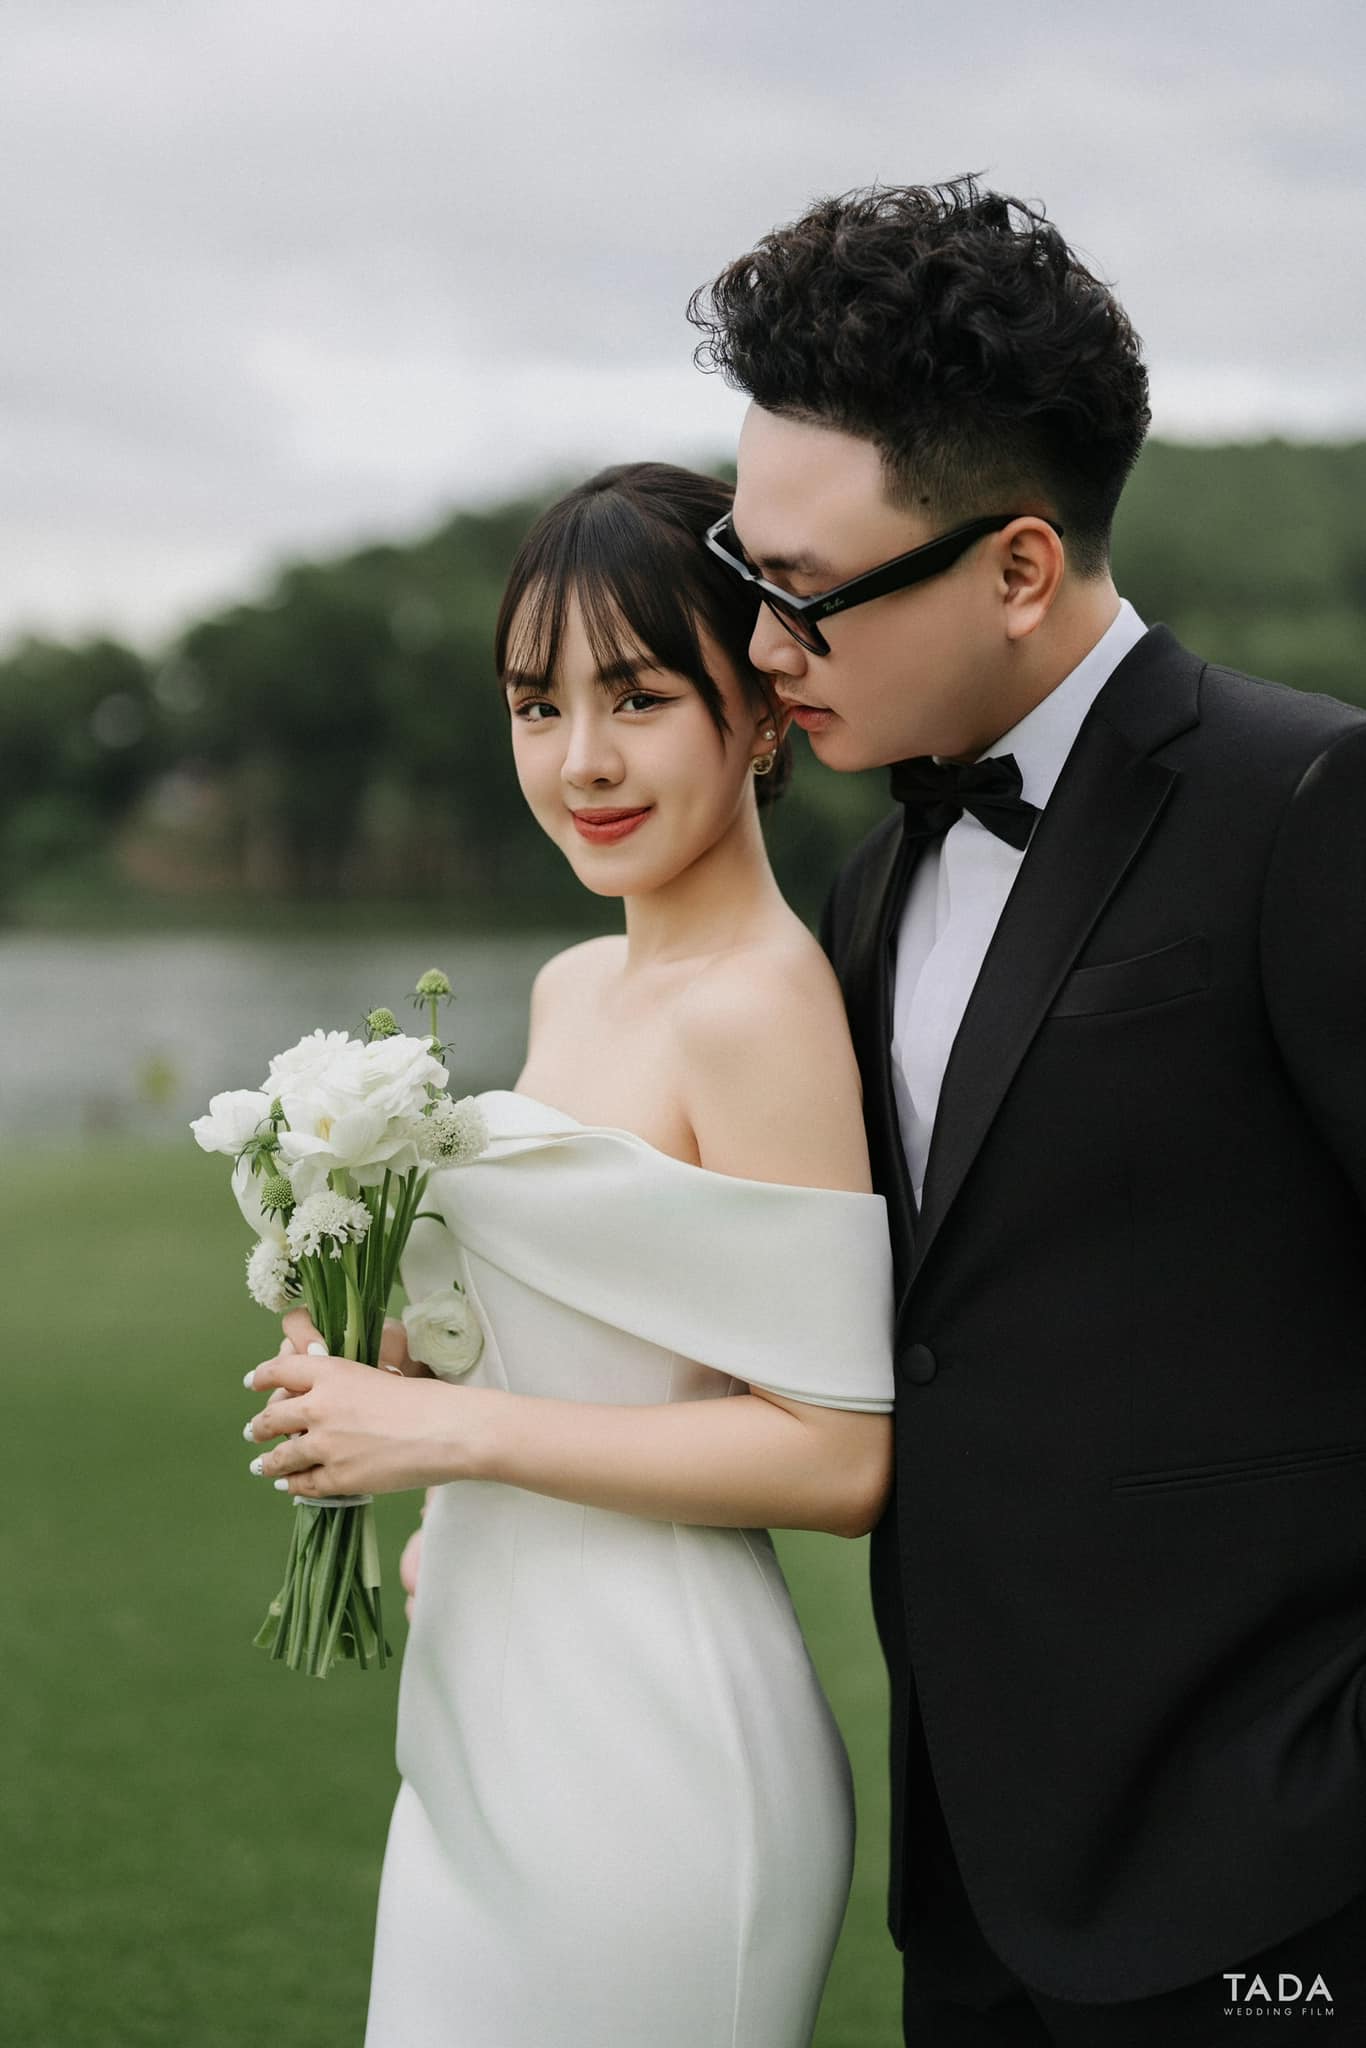 MC xinh đẹp làng game tổ chức hôn lễ ở Việt Nam sau tuần trăng mật đi 8 nước châu Âu- Ảnh 1.